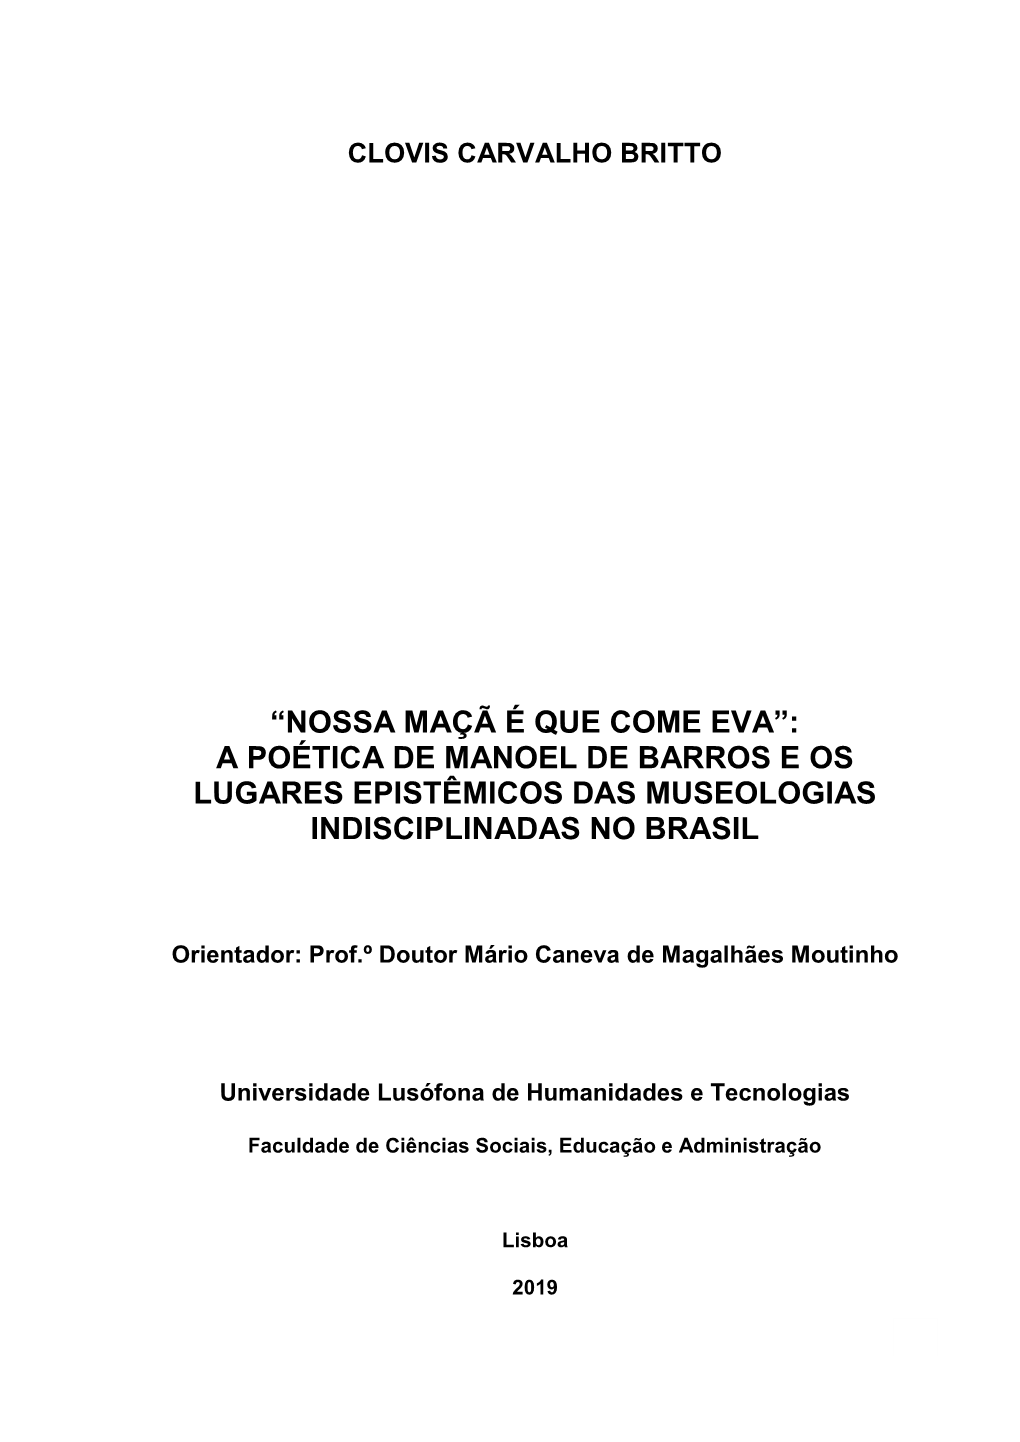 “Nossa Maçã É Que Come Eva”: a Poética De Manoel De Barros E Os Lugares Epistêmicos Das Museologias Indisciplinadas No Brasil